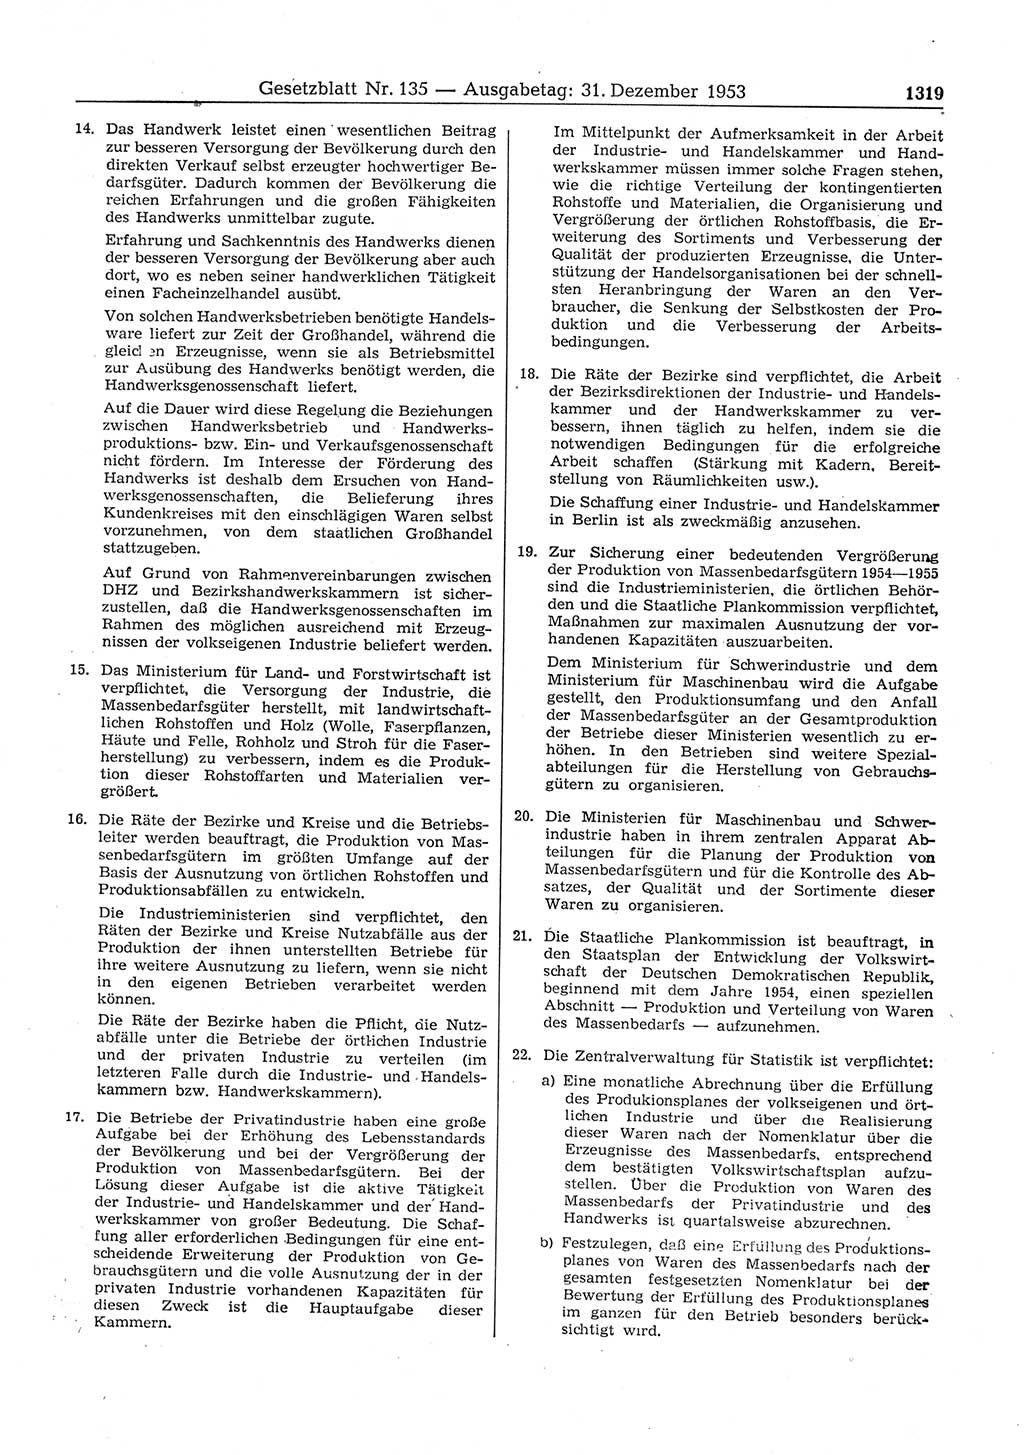 Gesetzblatt (GBl.) der Deutschen Demokratischen Republik (DDR) 1953, Seite 1319 (GBl. DDR 1953, S. 1319)